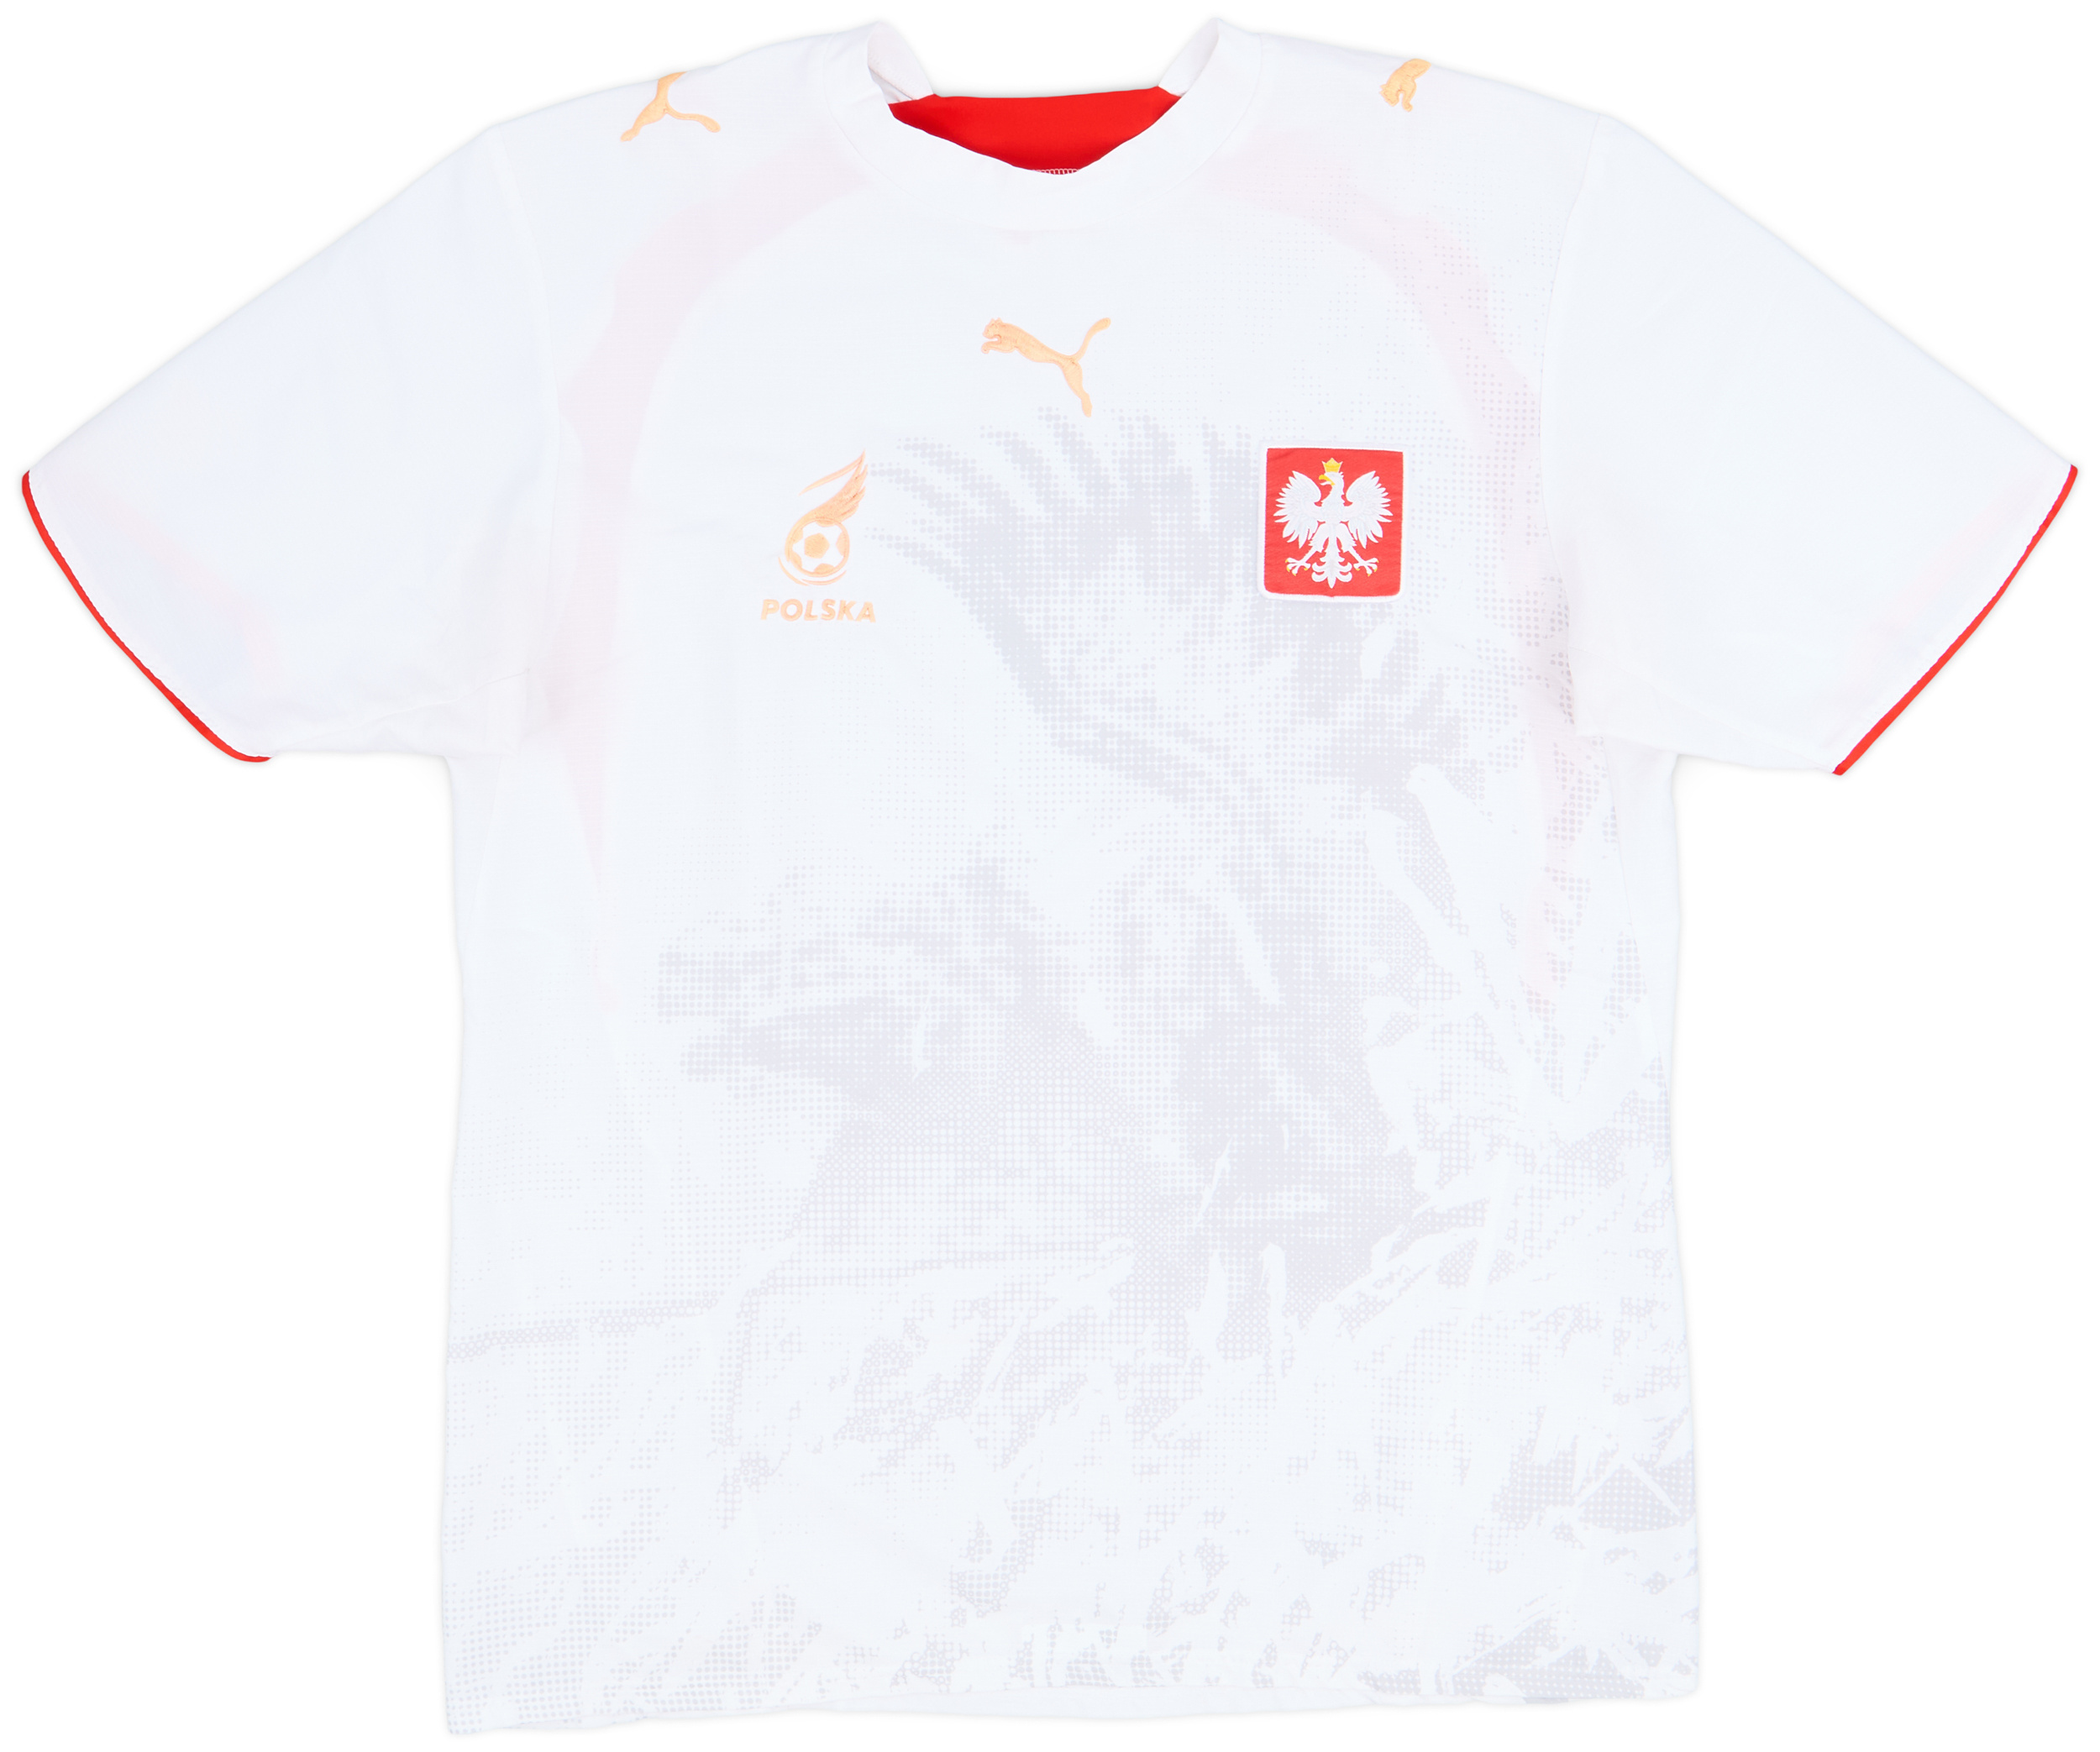 2006-08 Poland Home Shirt - 7/10 - ()